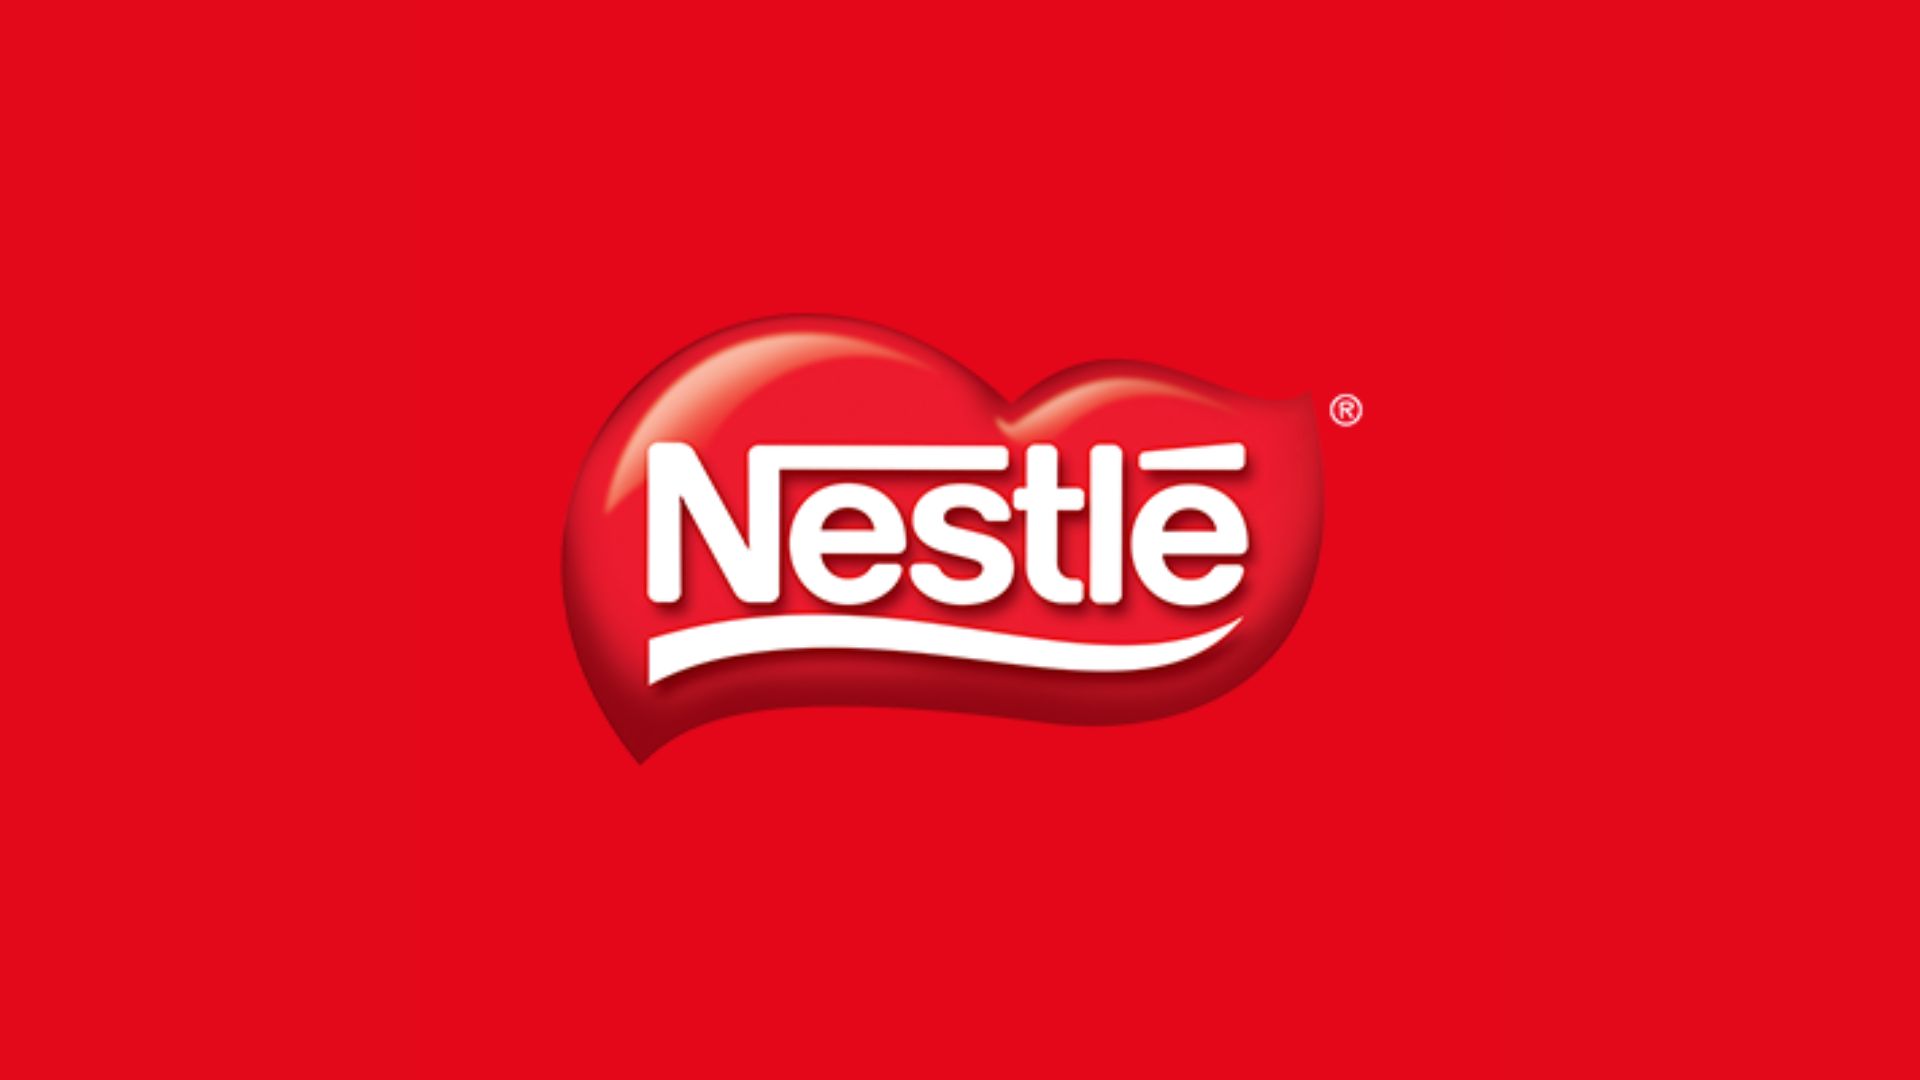 Nestlé Chocolates